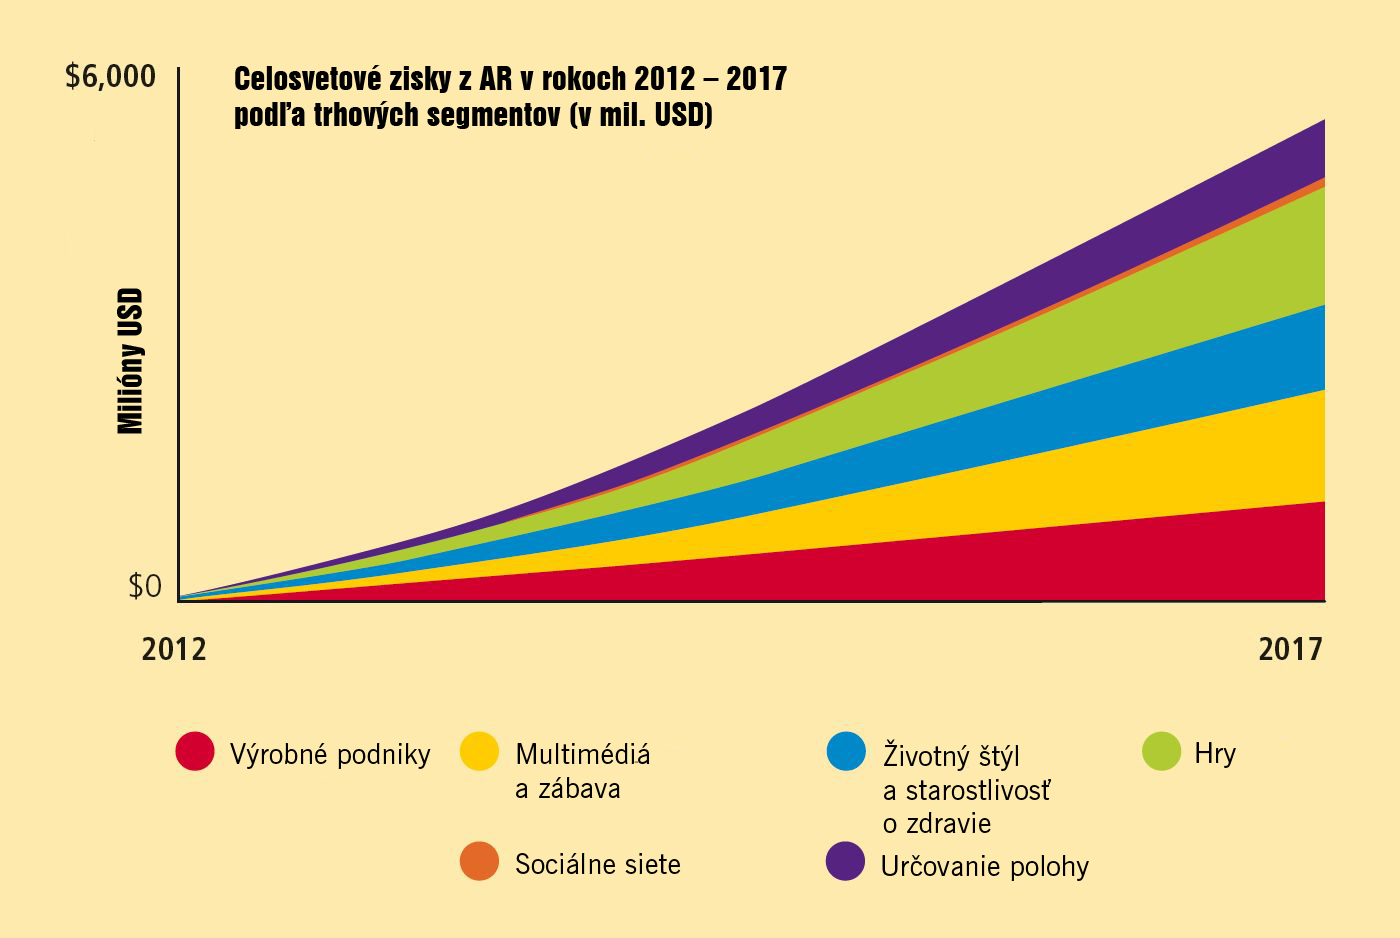 Obr. 2 Celosvetové zisky z AR v rokoch 2012 - 2017 (odhad)